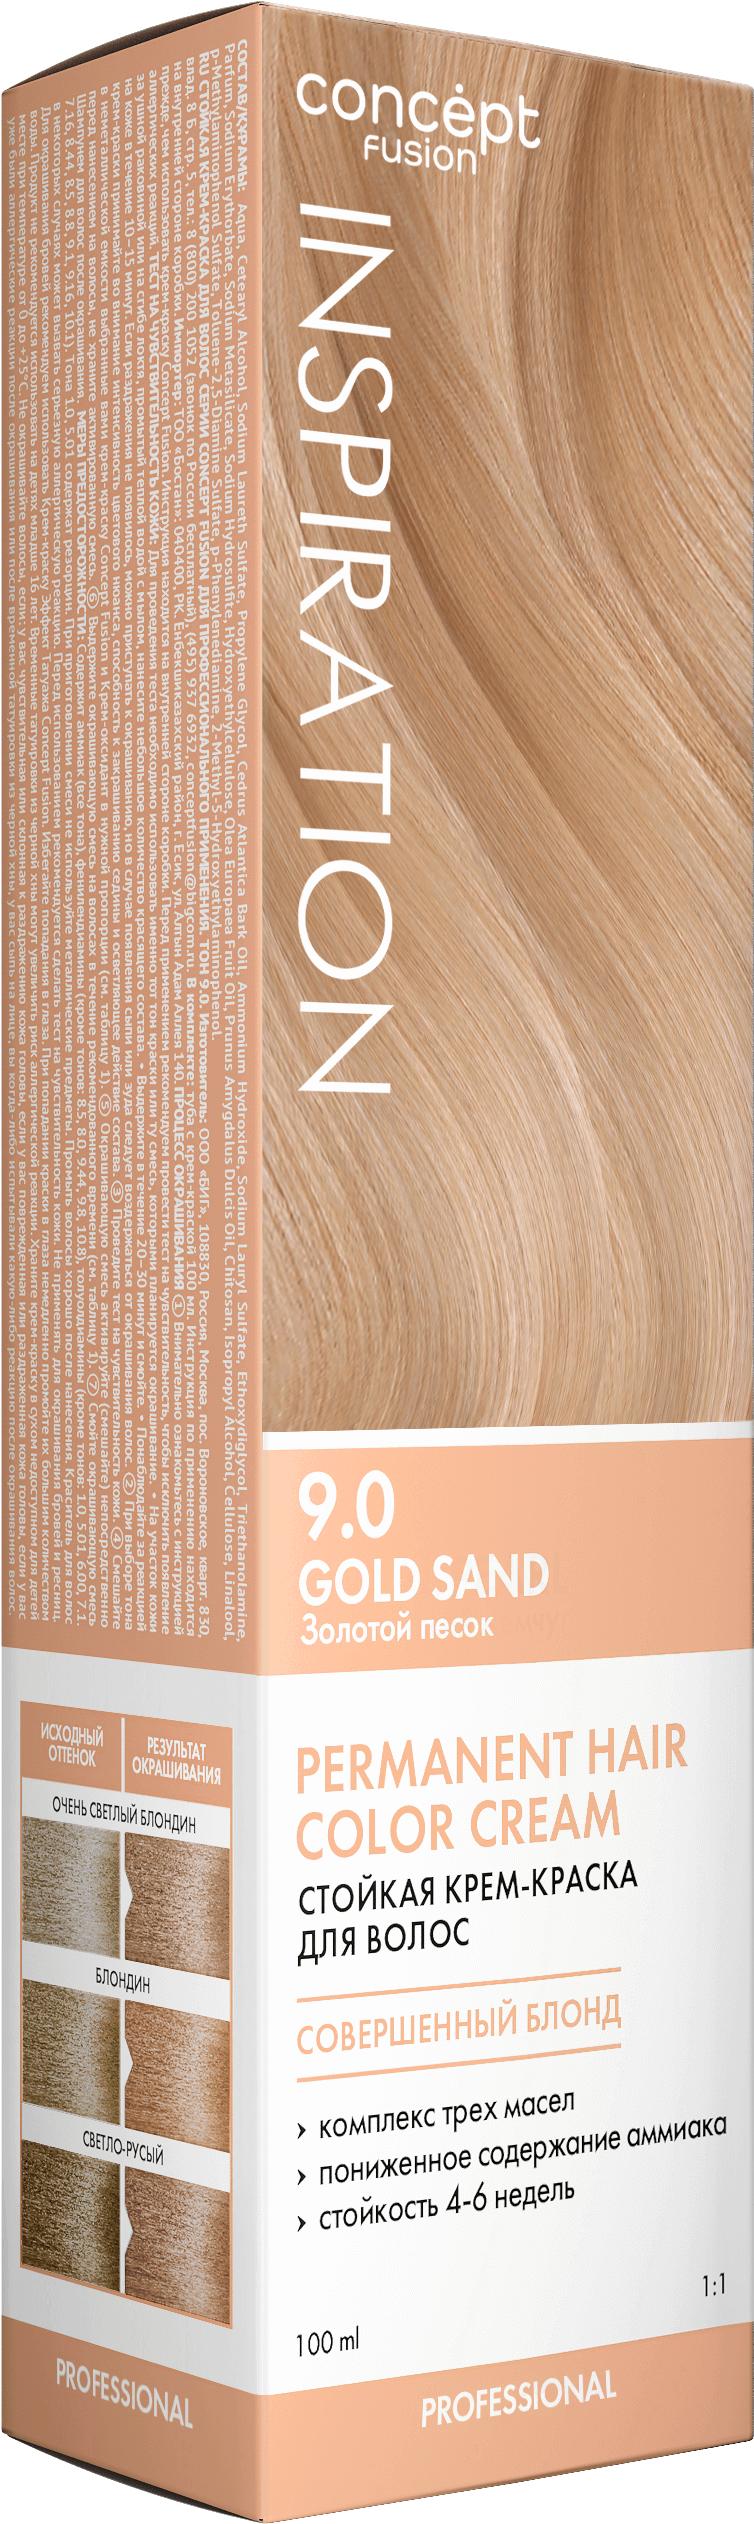 Краска для волос Concept Fusion  Золотой песок (Gold Sand) 9.0 100 мл., картон